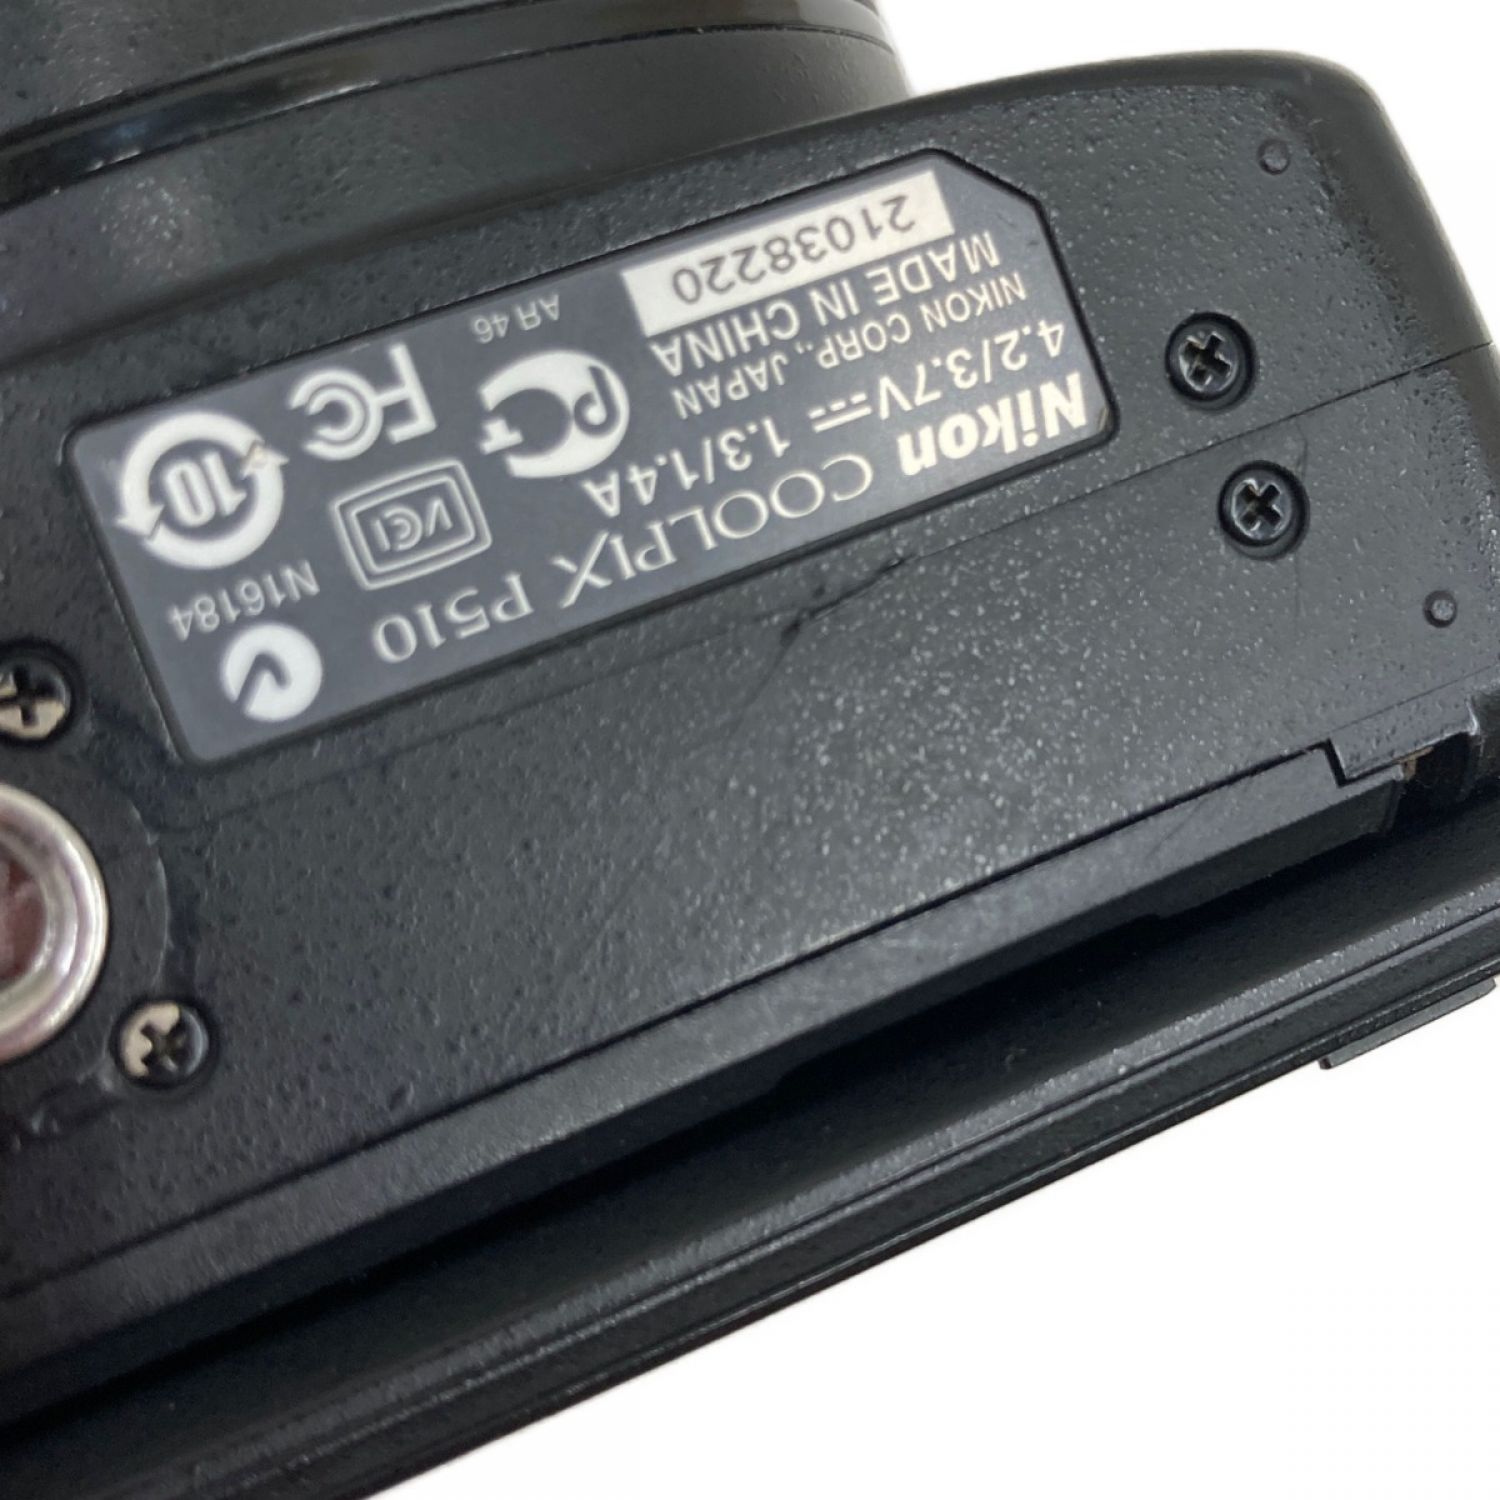 中古】 Nikon ニコン コンパクト デジタルカメラ COOLPIX P510